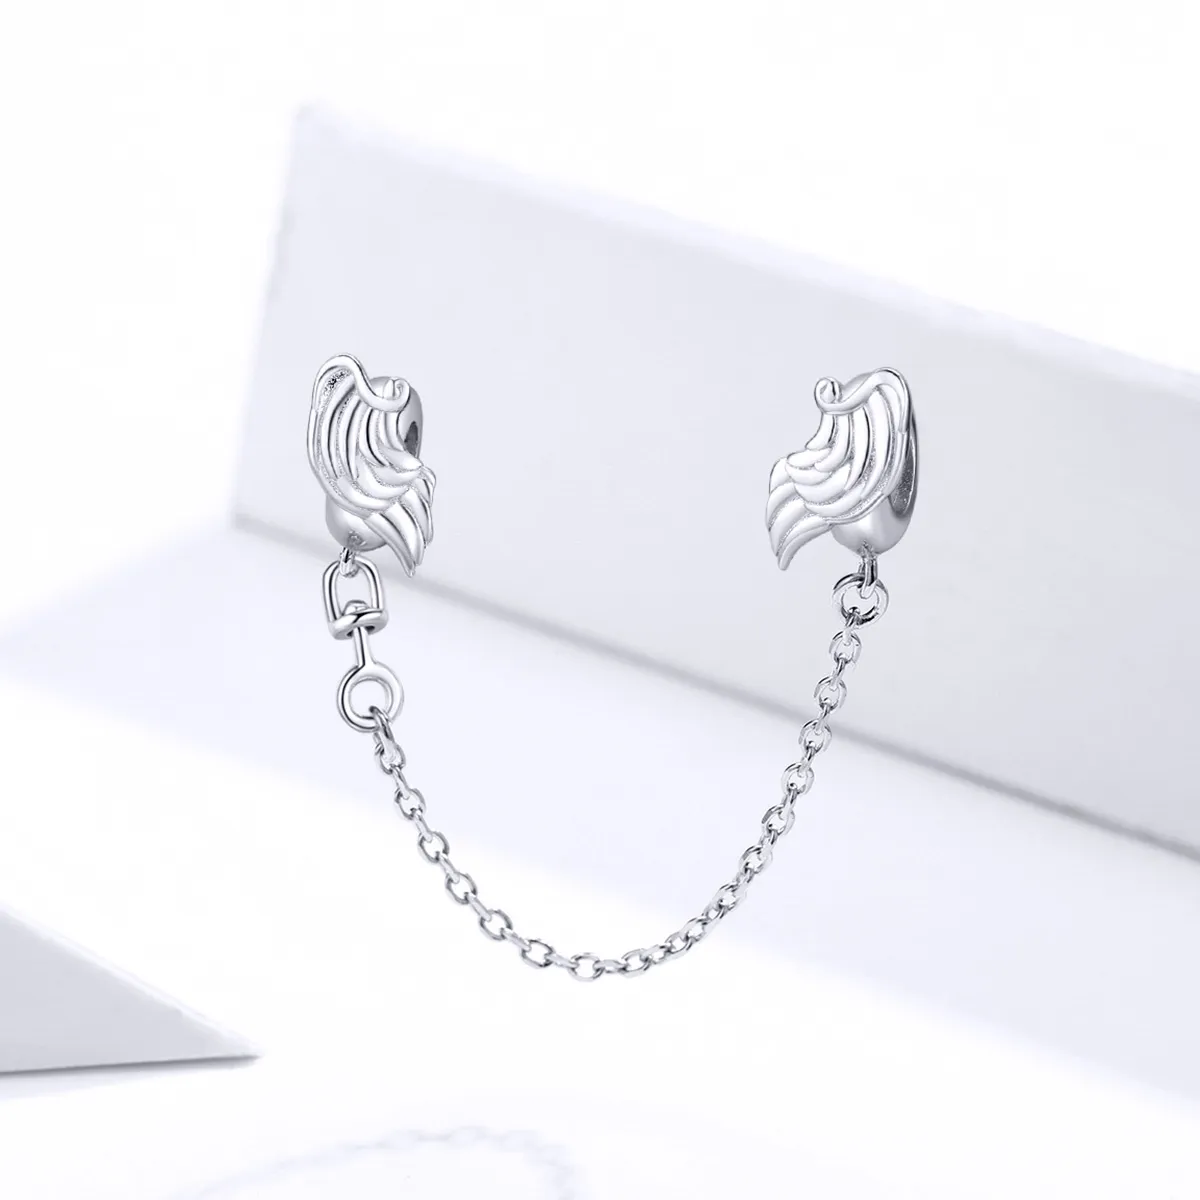 Lanț de siguranță Tip Pandora cu Aripile Îngerului din argint - BSC241